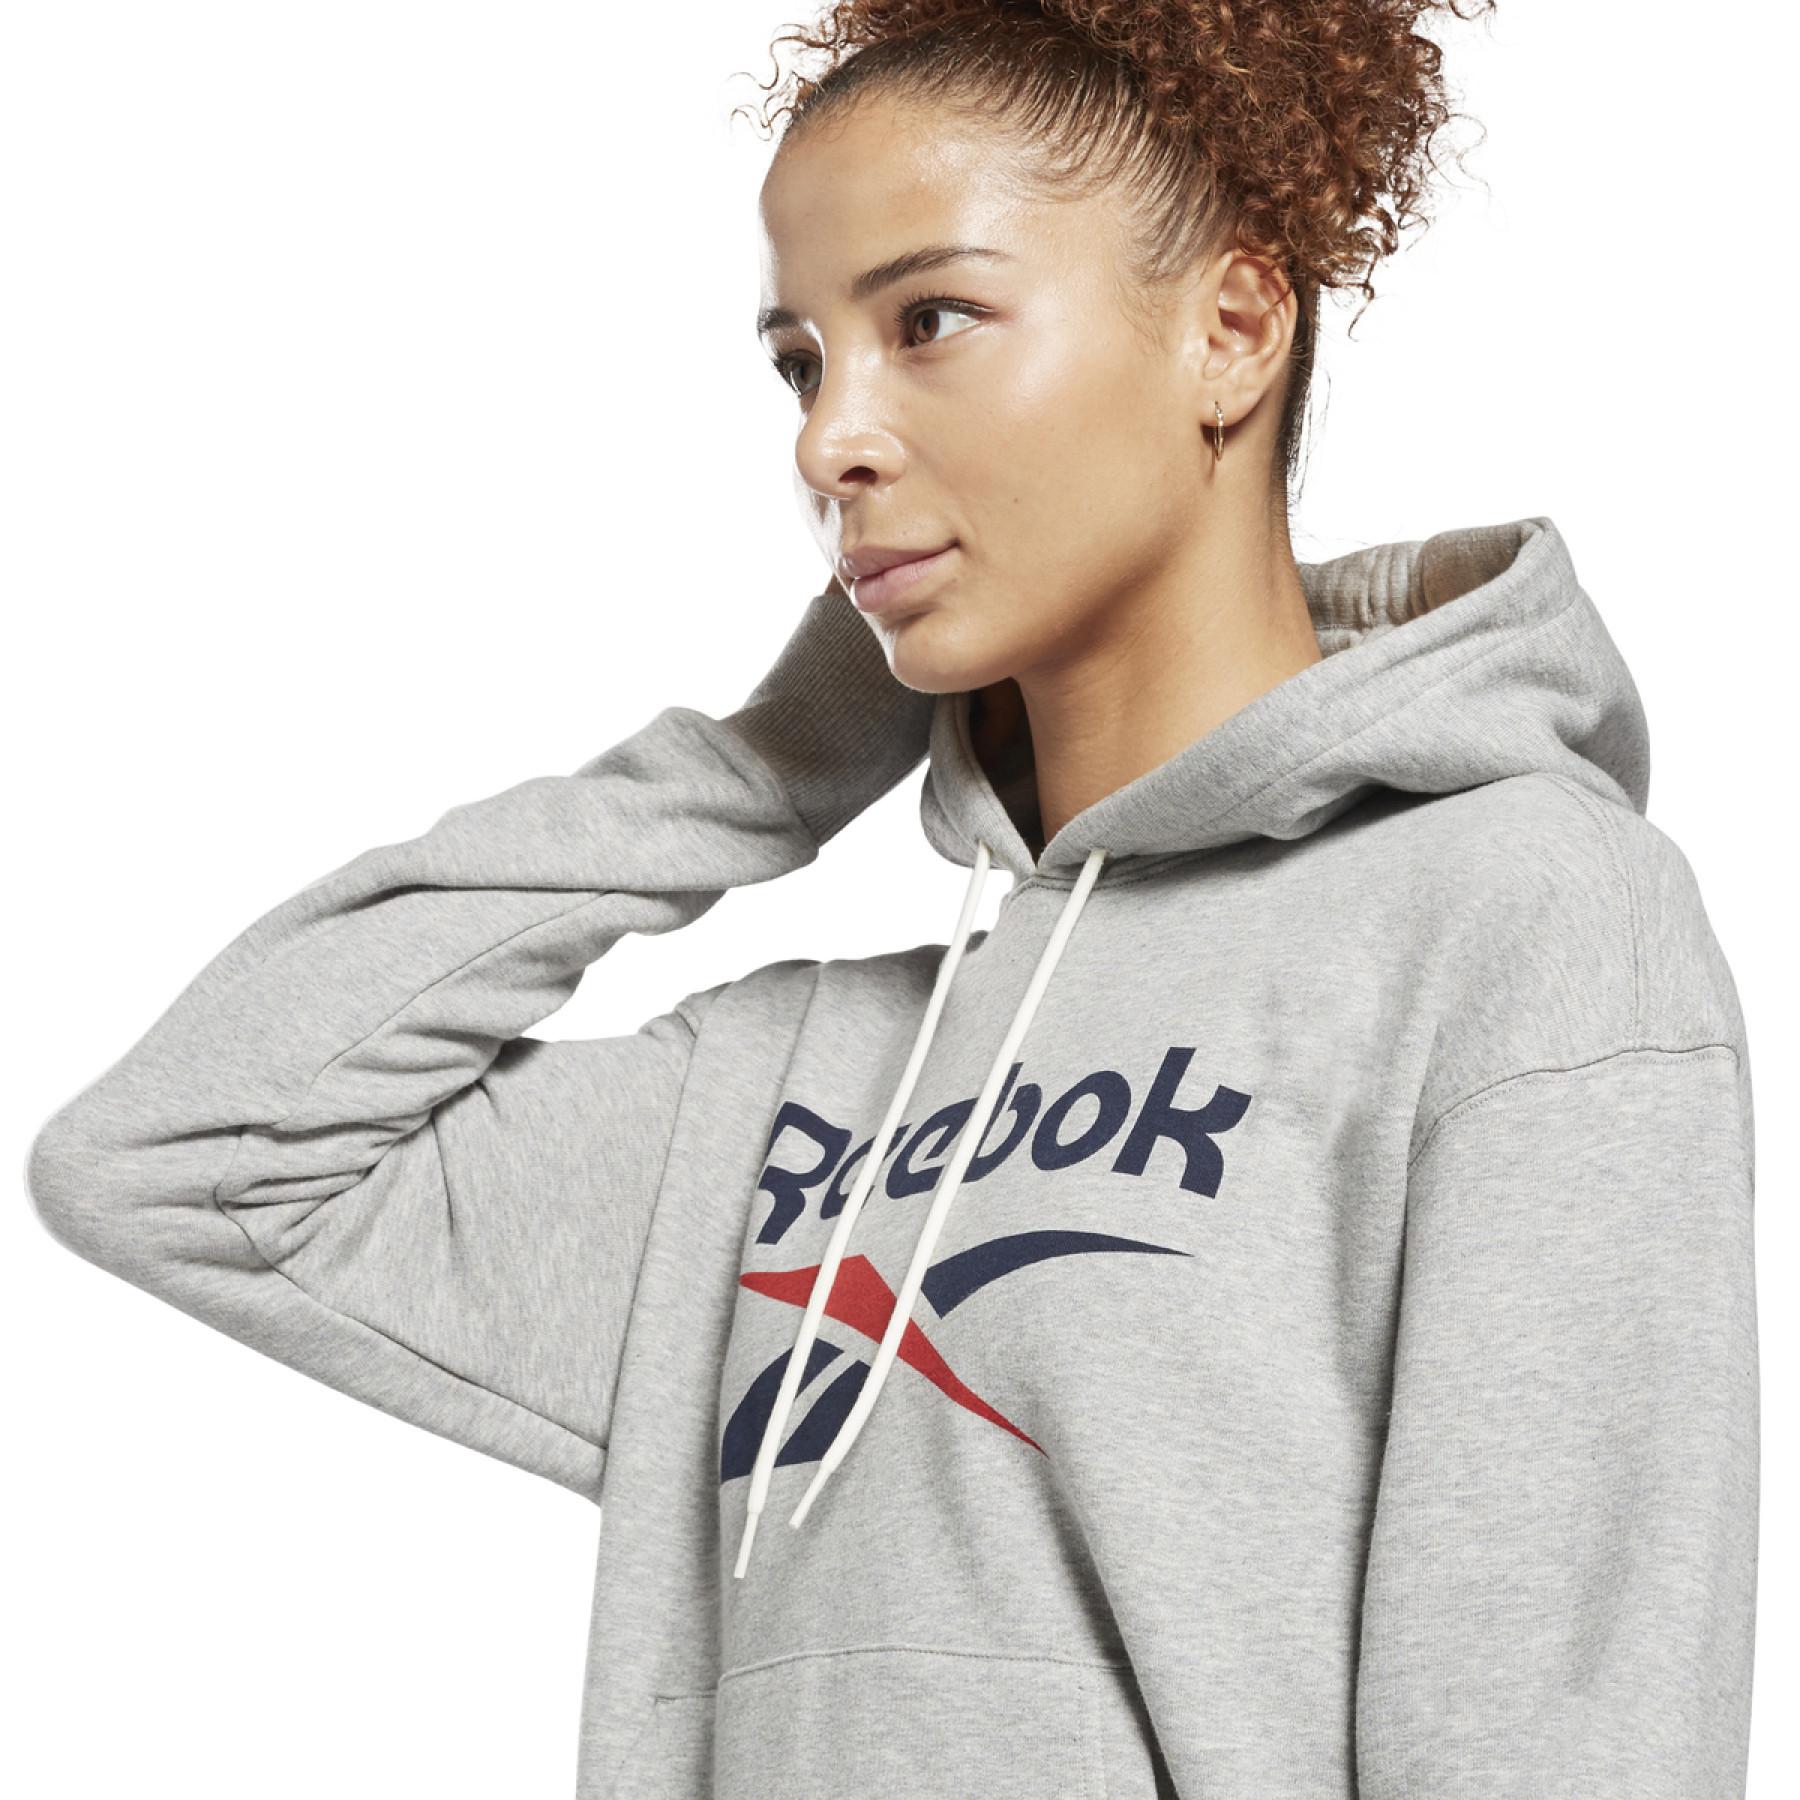 Women's hooded sweatshirt Reebok Identity Logo French Terry